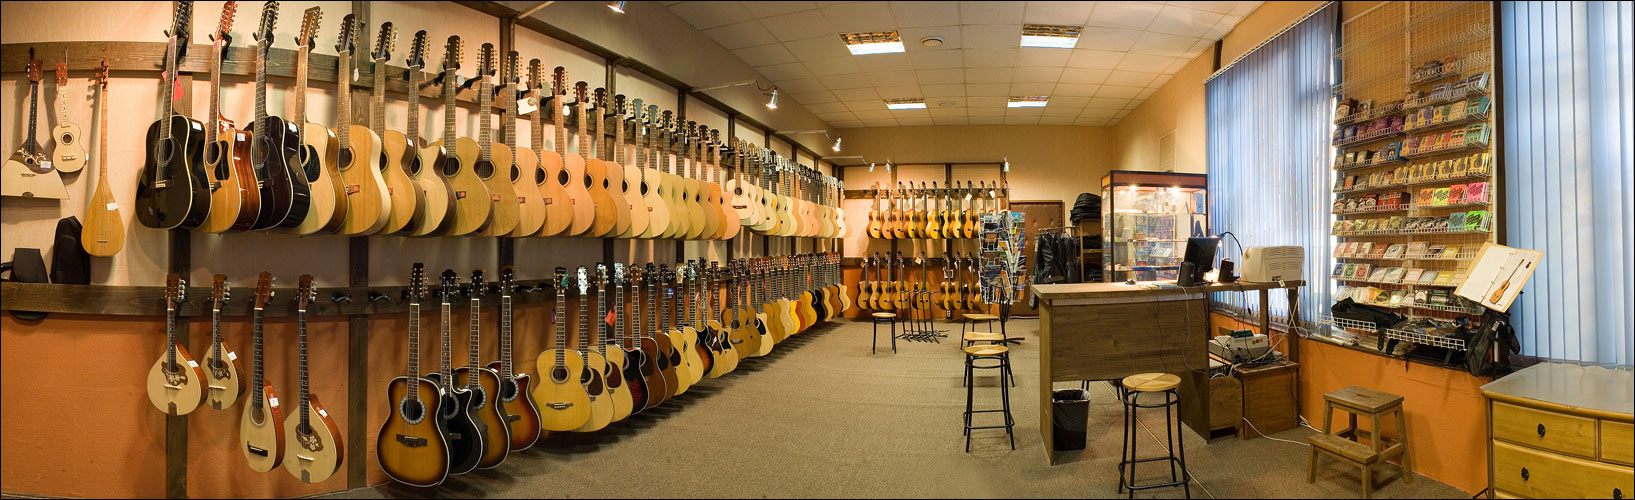 Музыкальный инструмент казань. Музыкальный магазин. Магазин музыкальных инструментов. Гитарный магазин. Гитары музыкальные магазины.